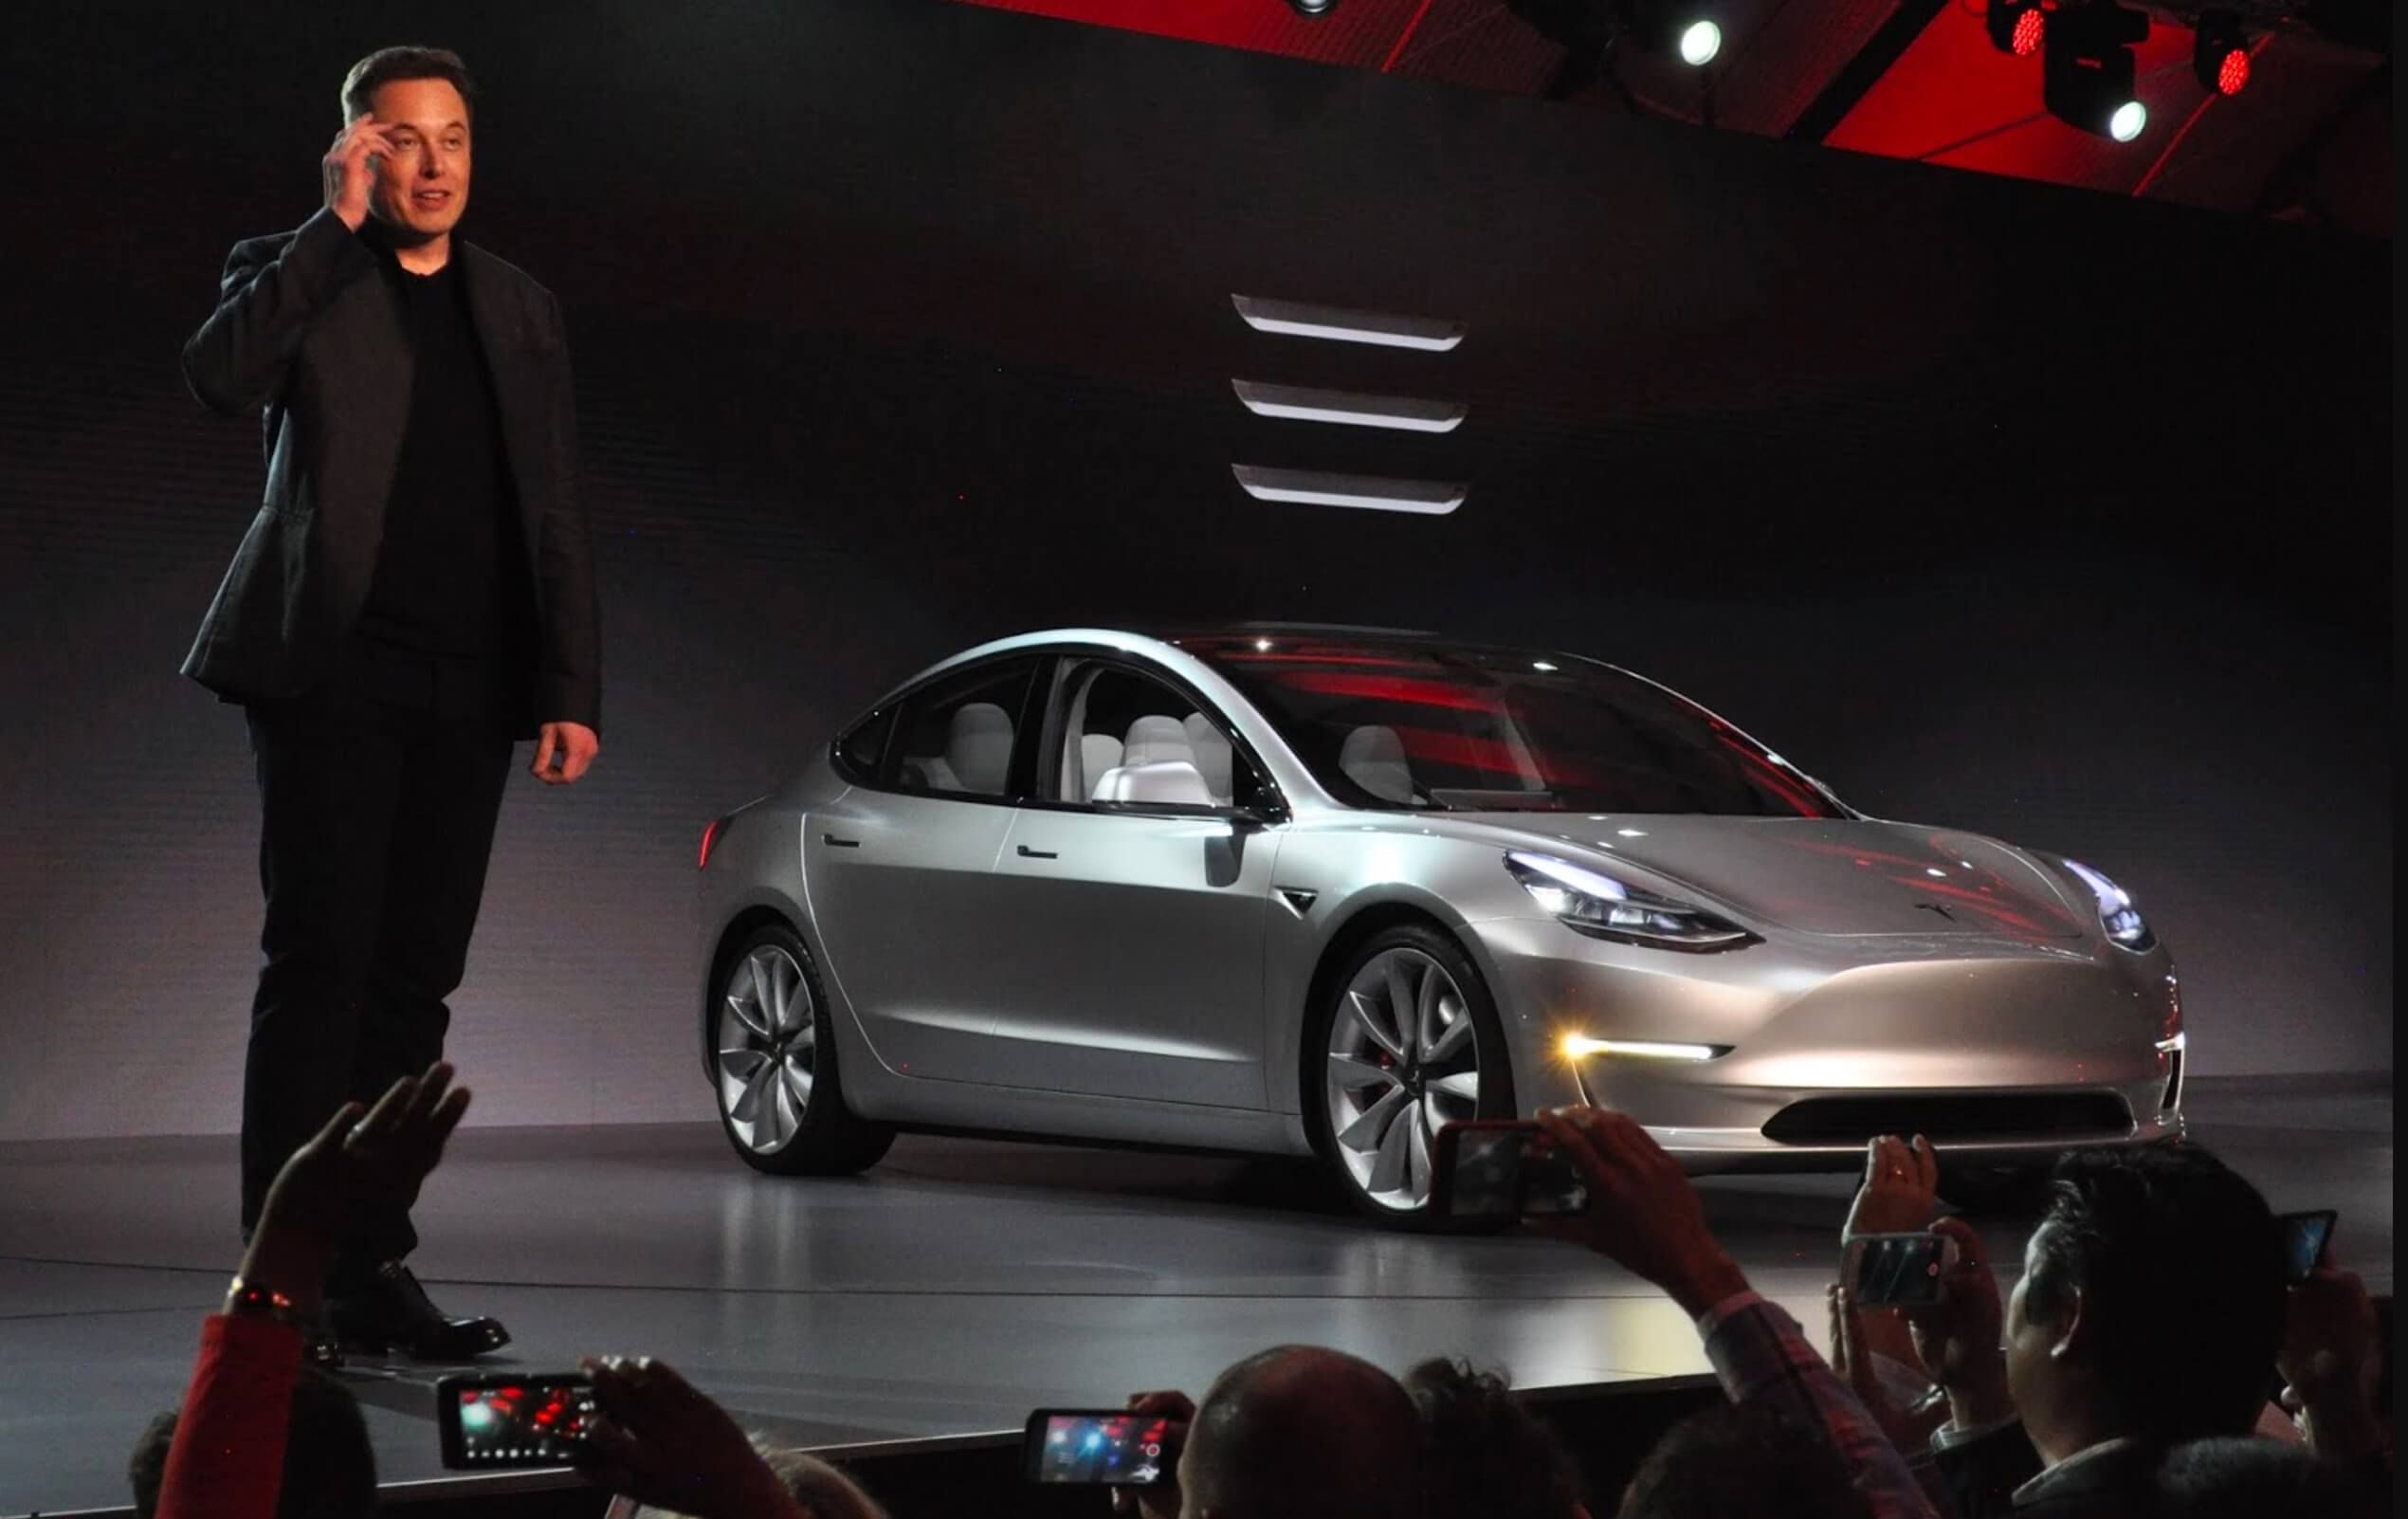 По словам члена совета директоров, Маск из Tesla смирится с банкротством, если его конкурент построит автомобиль лучше